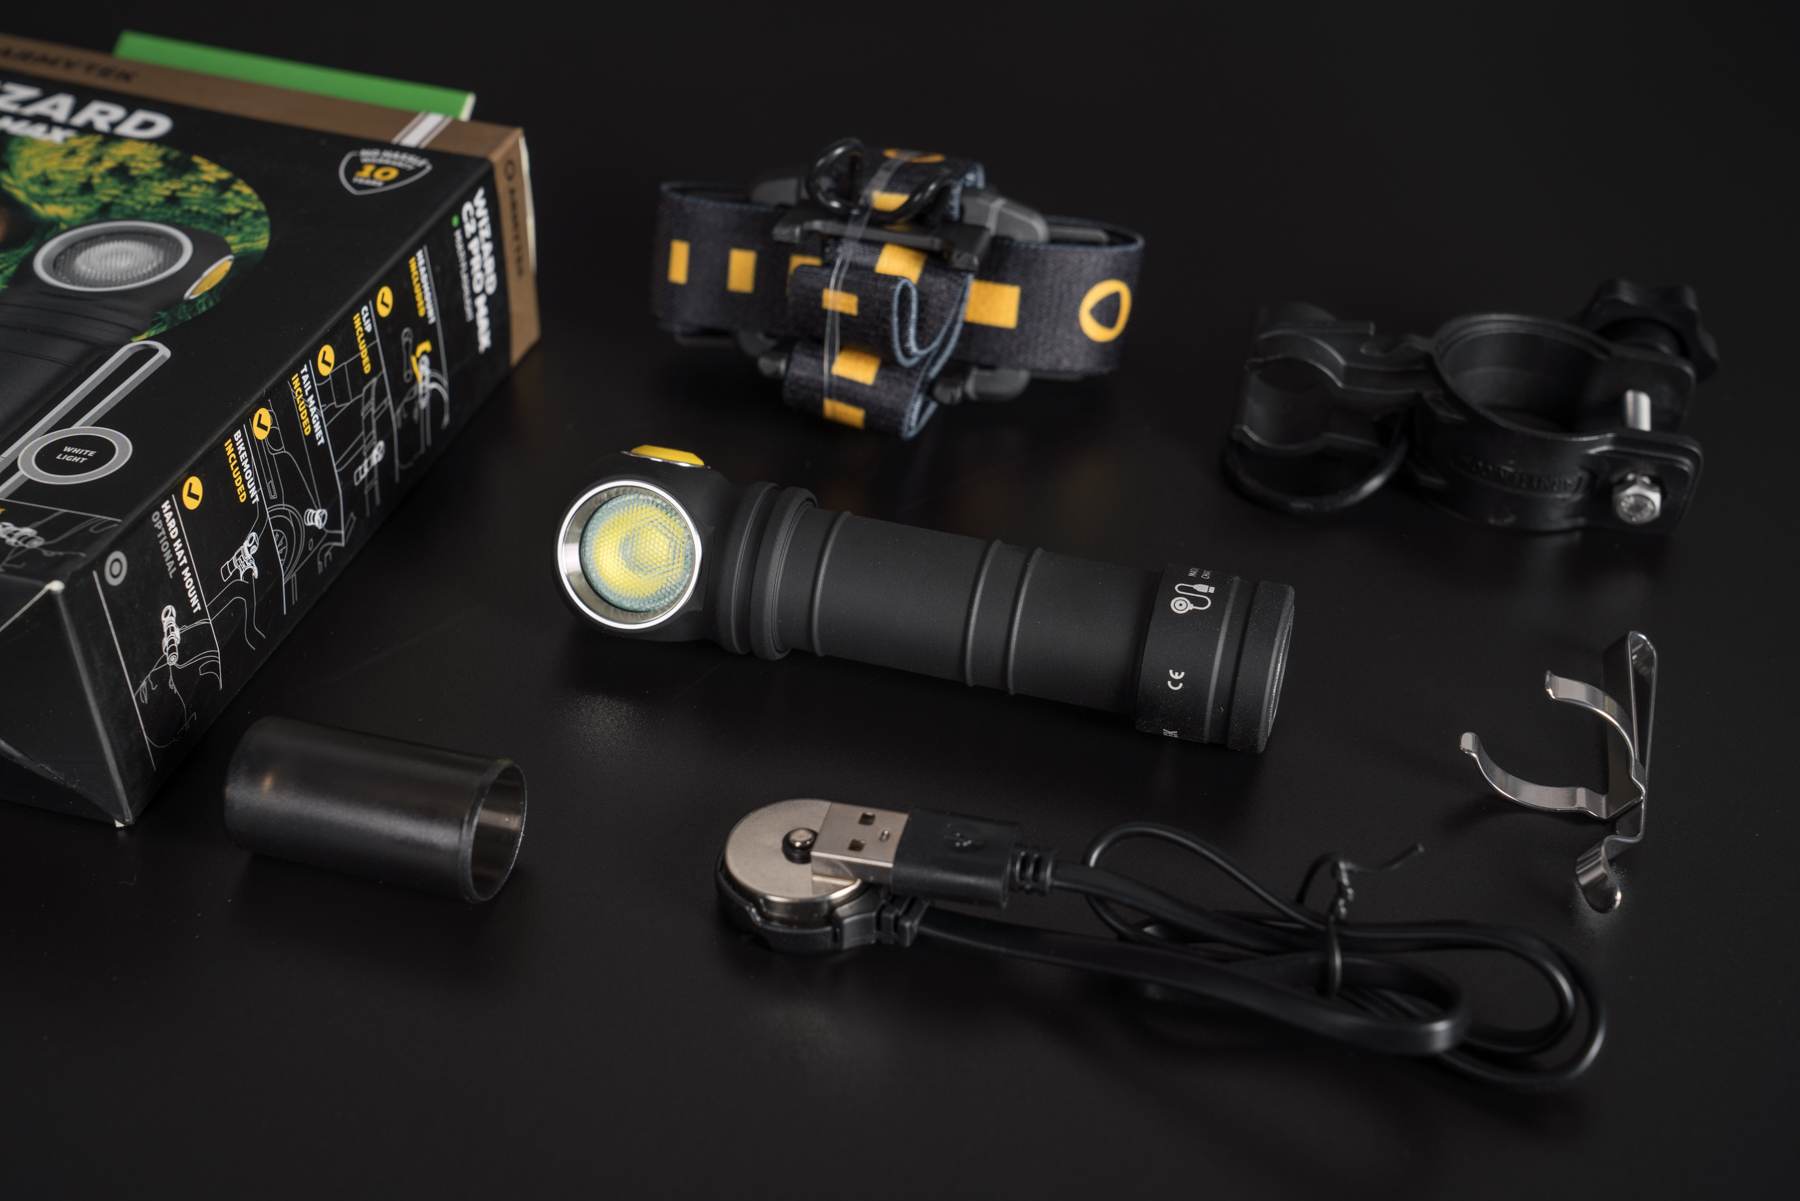 Đèn pin Armytek có thiết kế rất đơn giản nhưng cũng rất đặc trưng. Đó là lớp sơn tĩnh điện có bề mặt nhám màu đen trên thân đèn